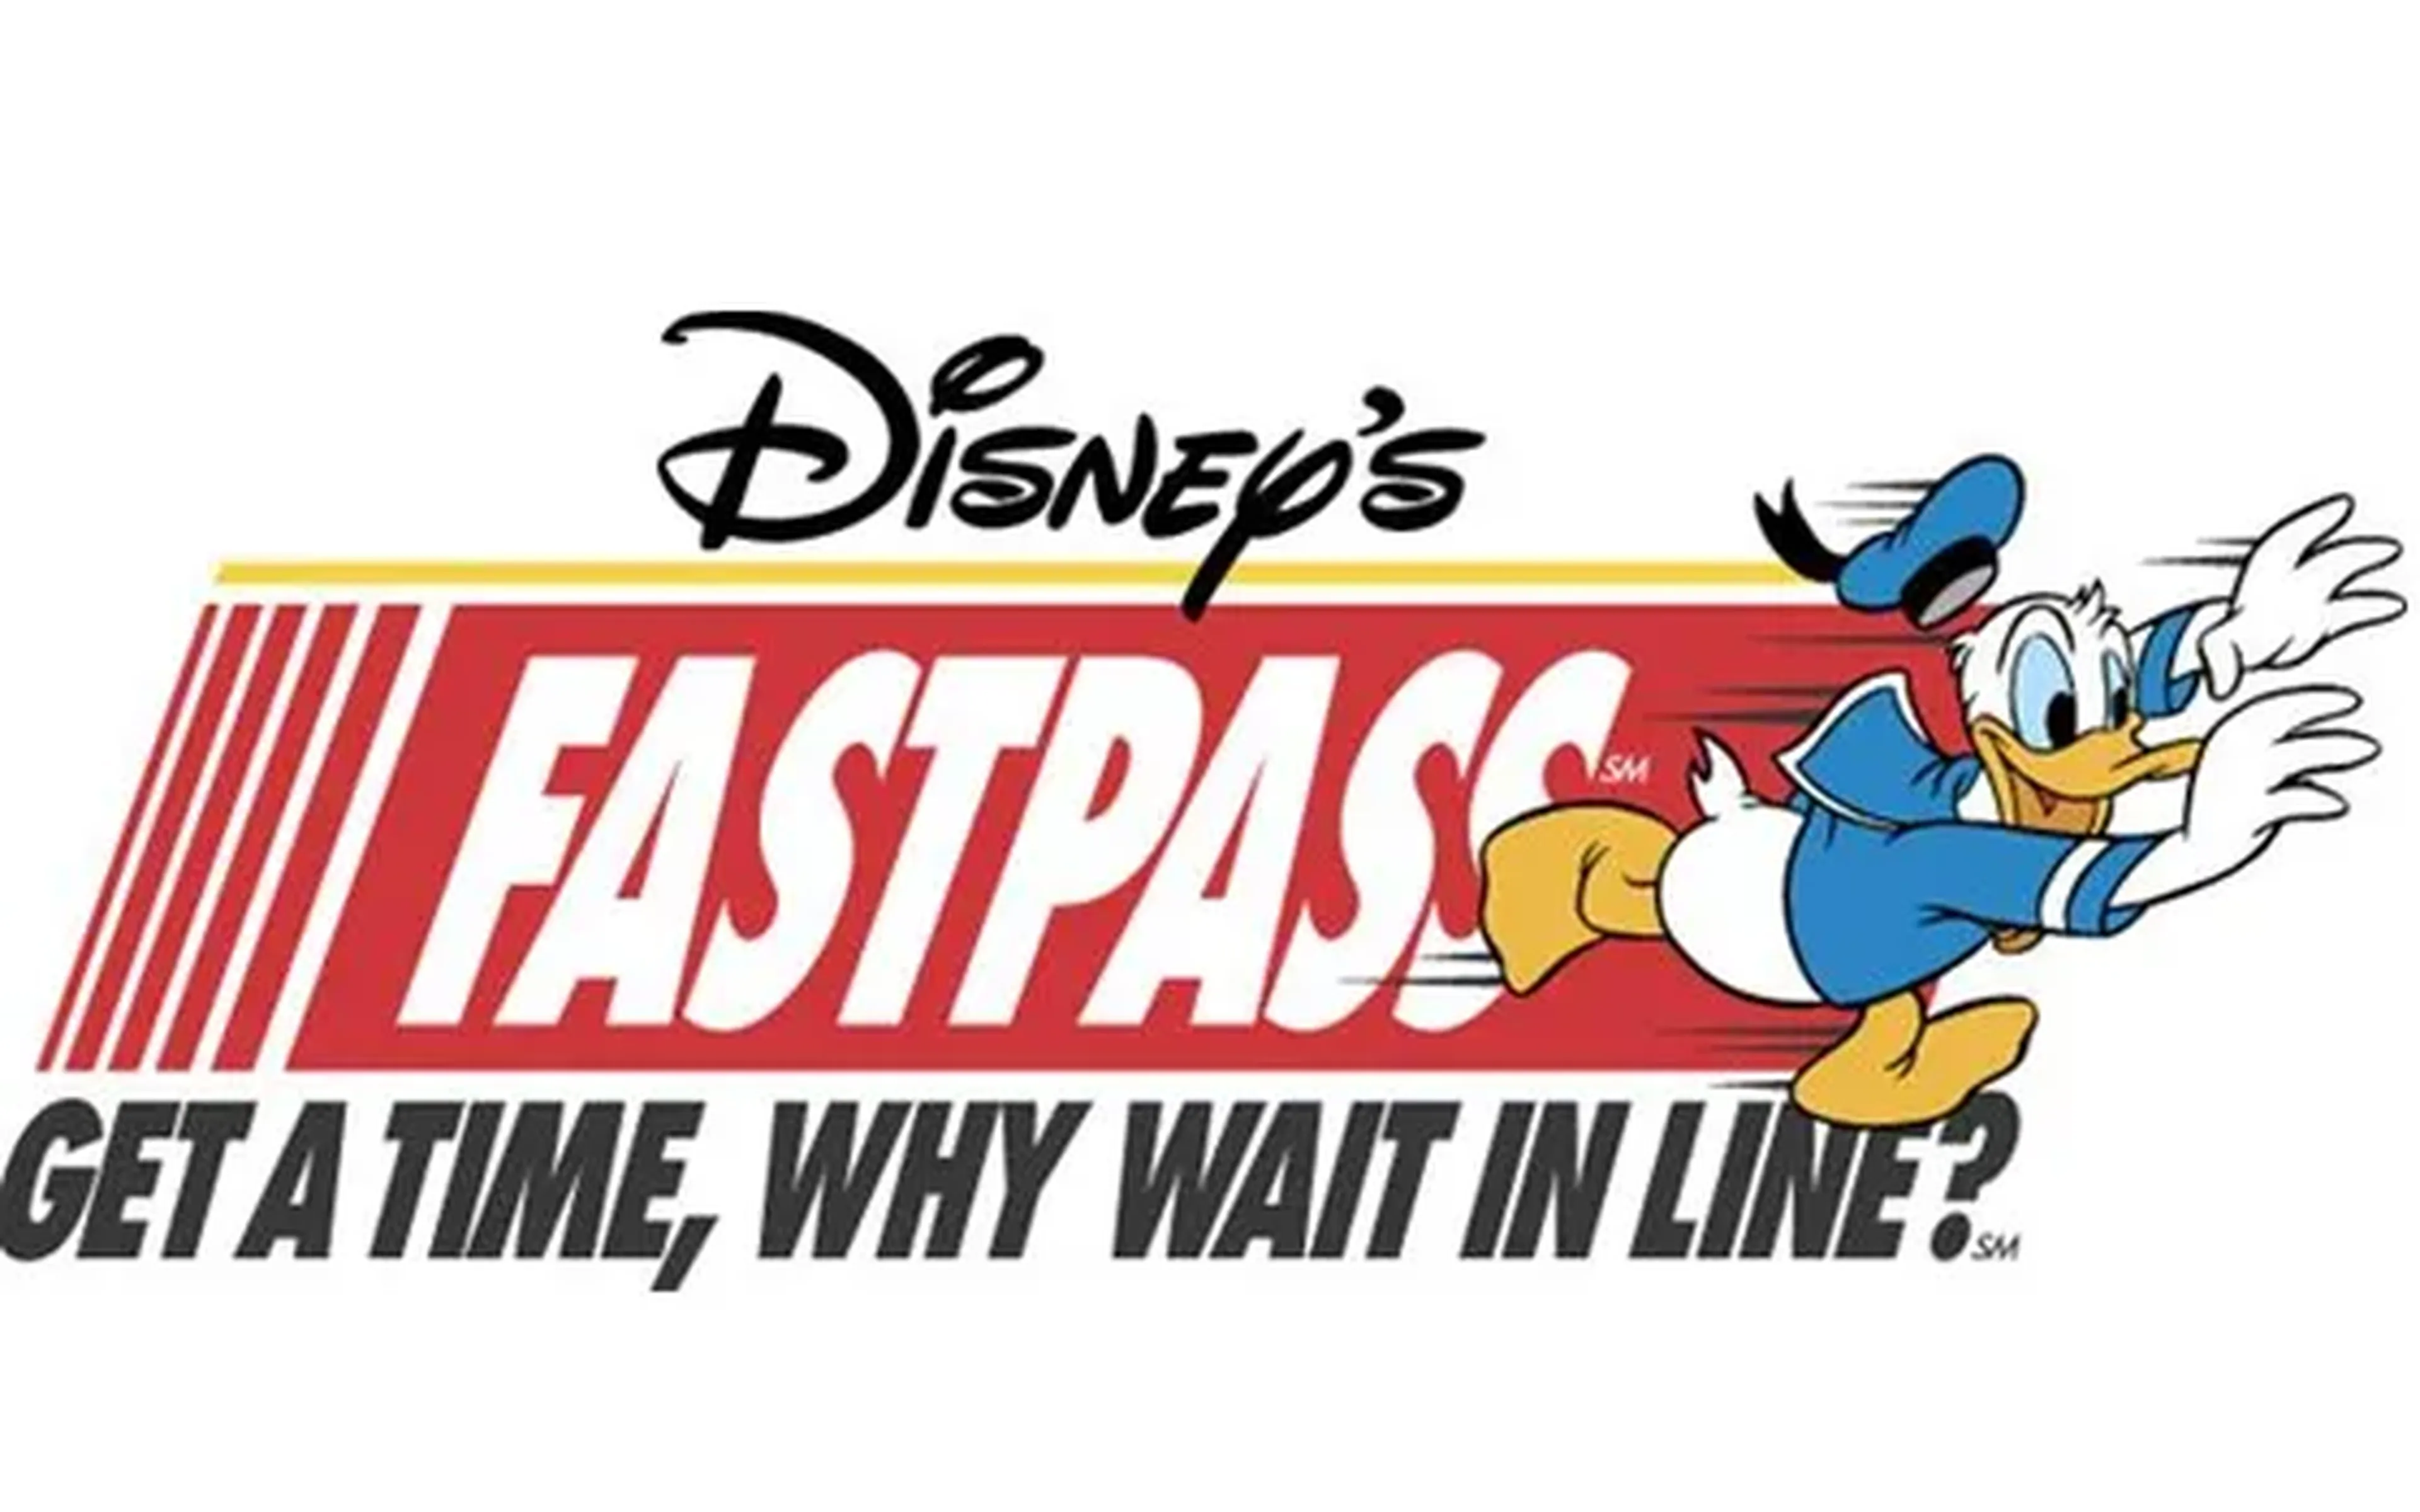 Fast Pass